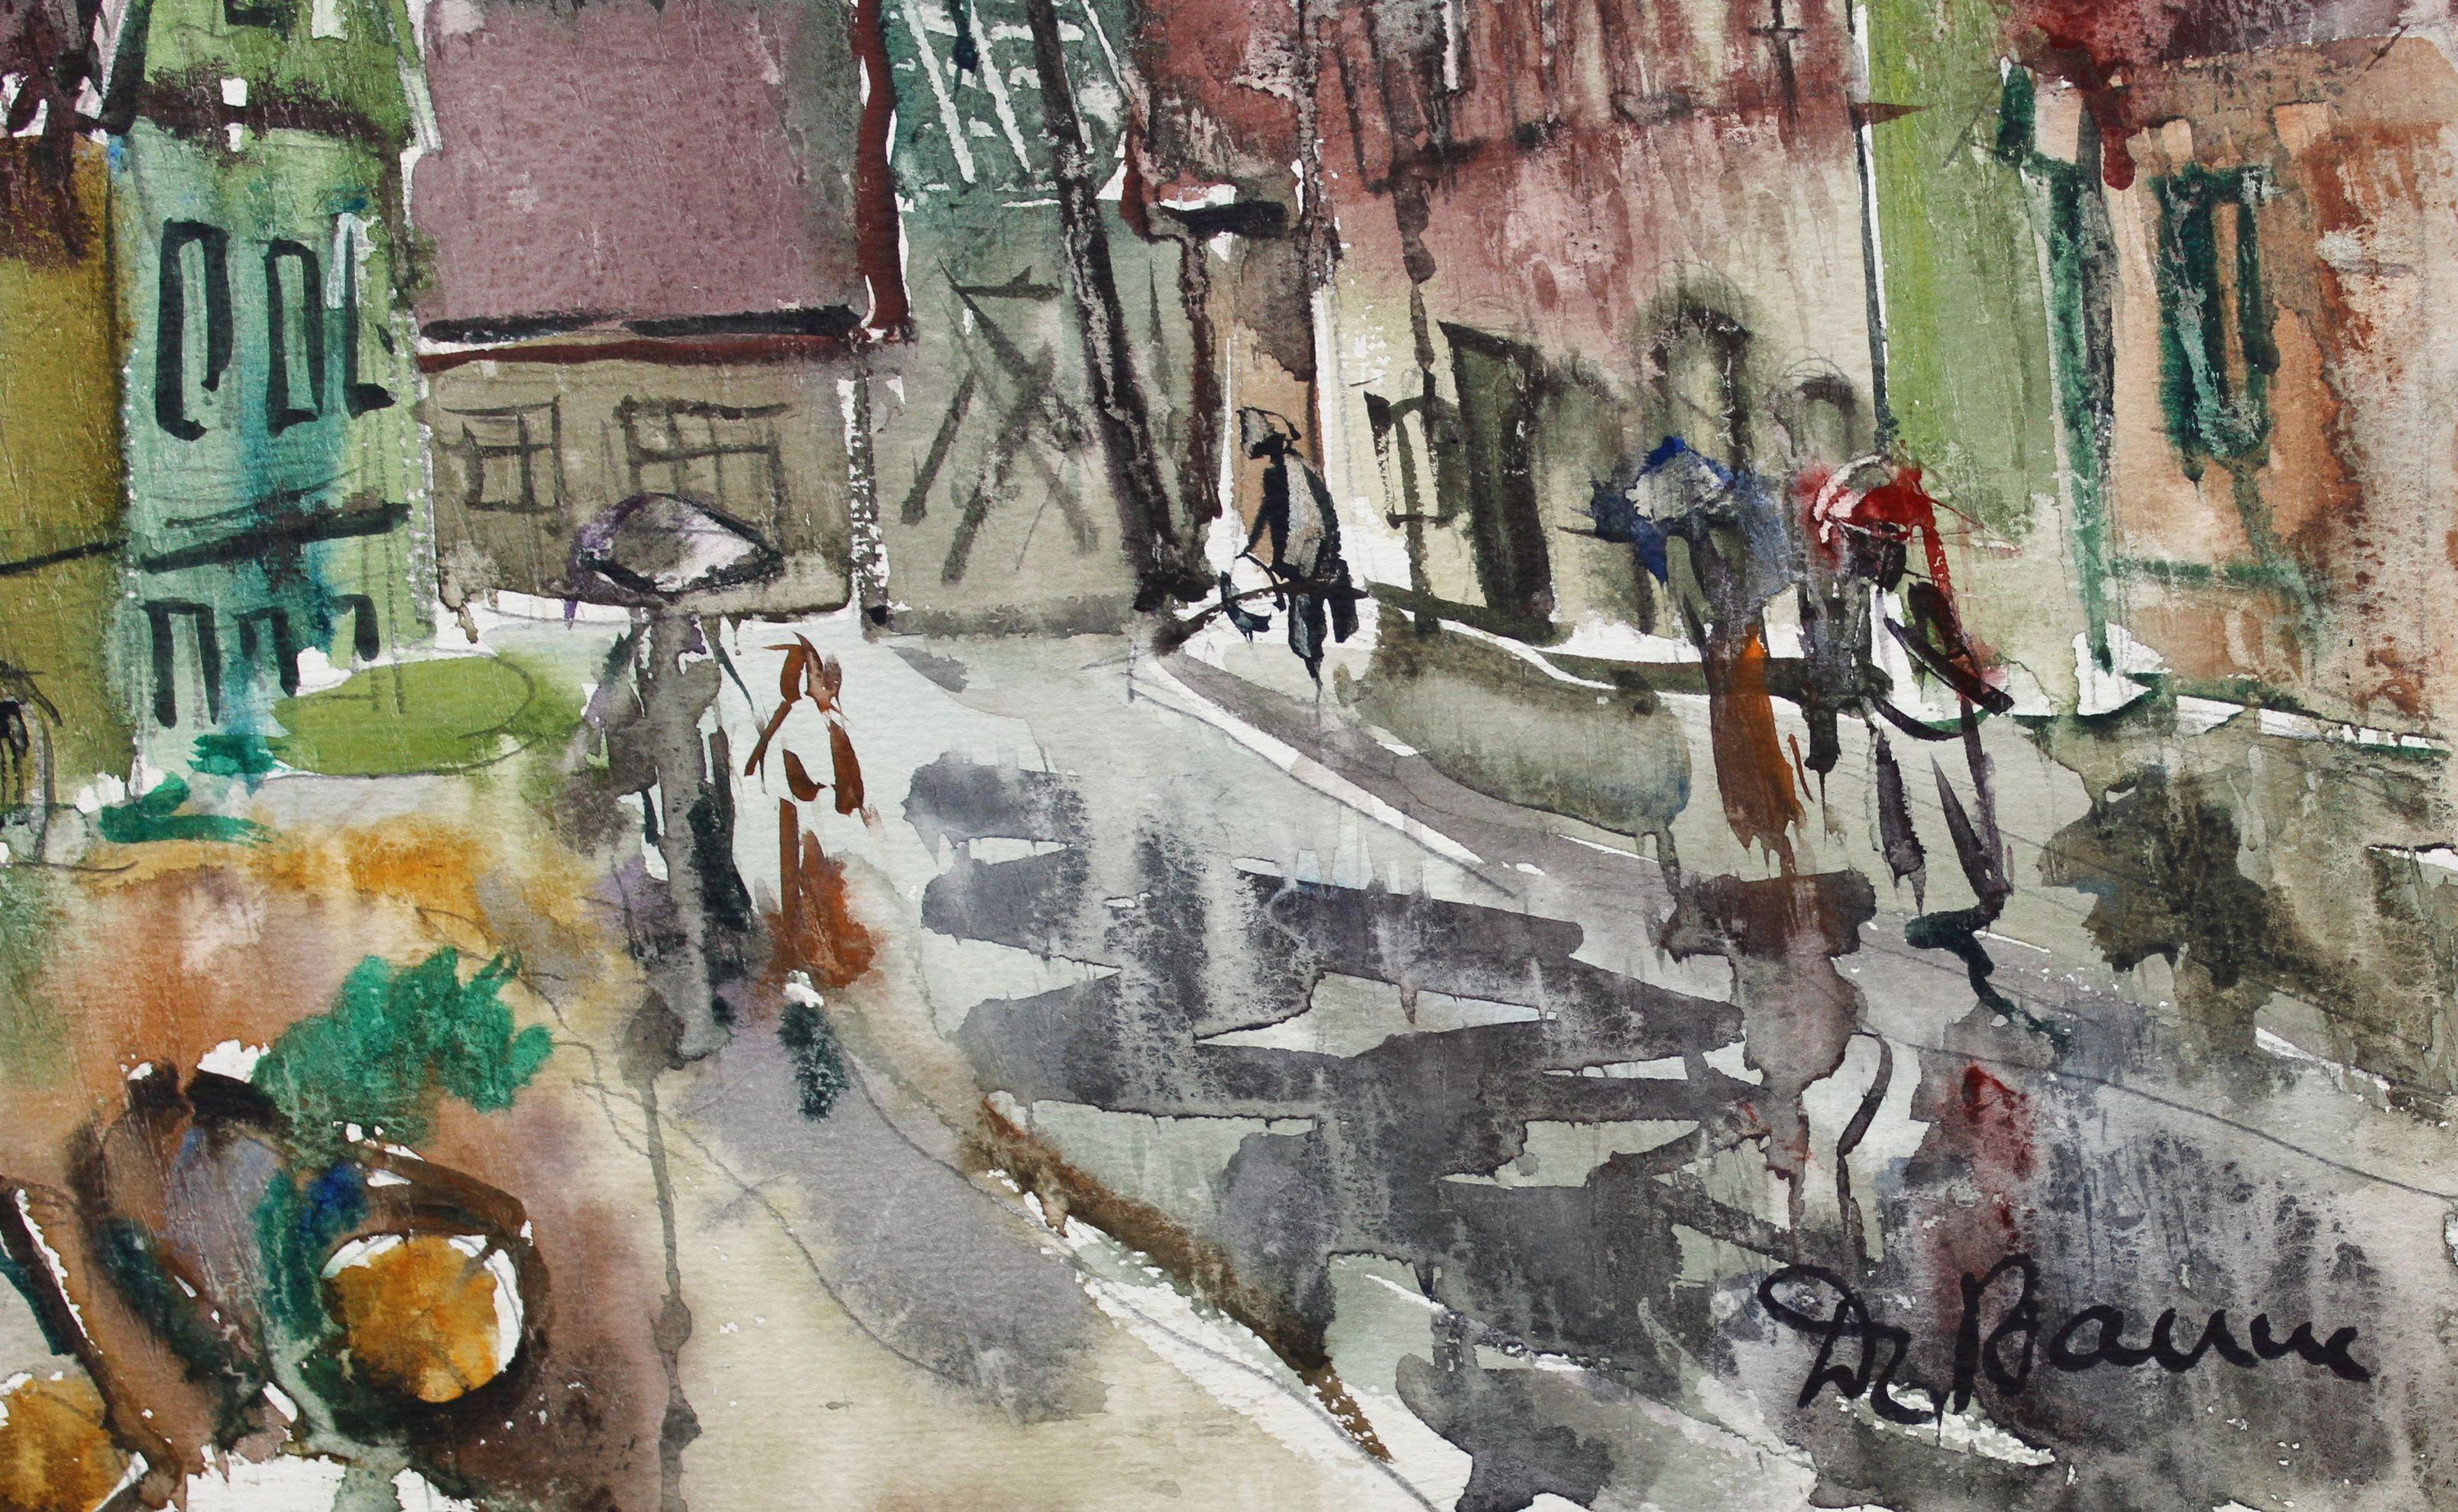 Dans une petite ville, 1969, papier, aquarelle, 36x48 cm - Painting de Dzidra Bauma